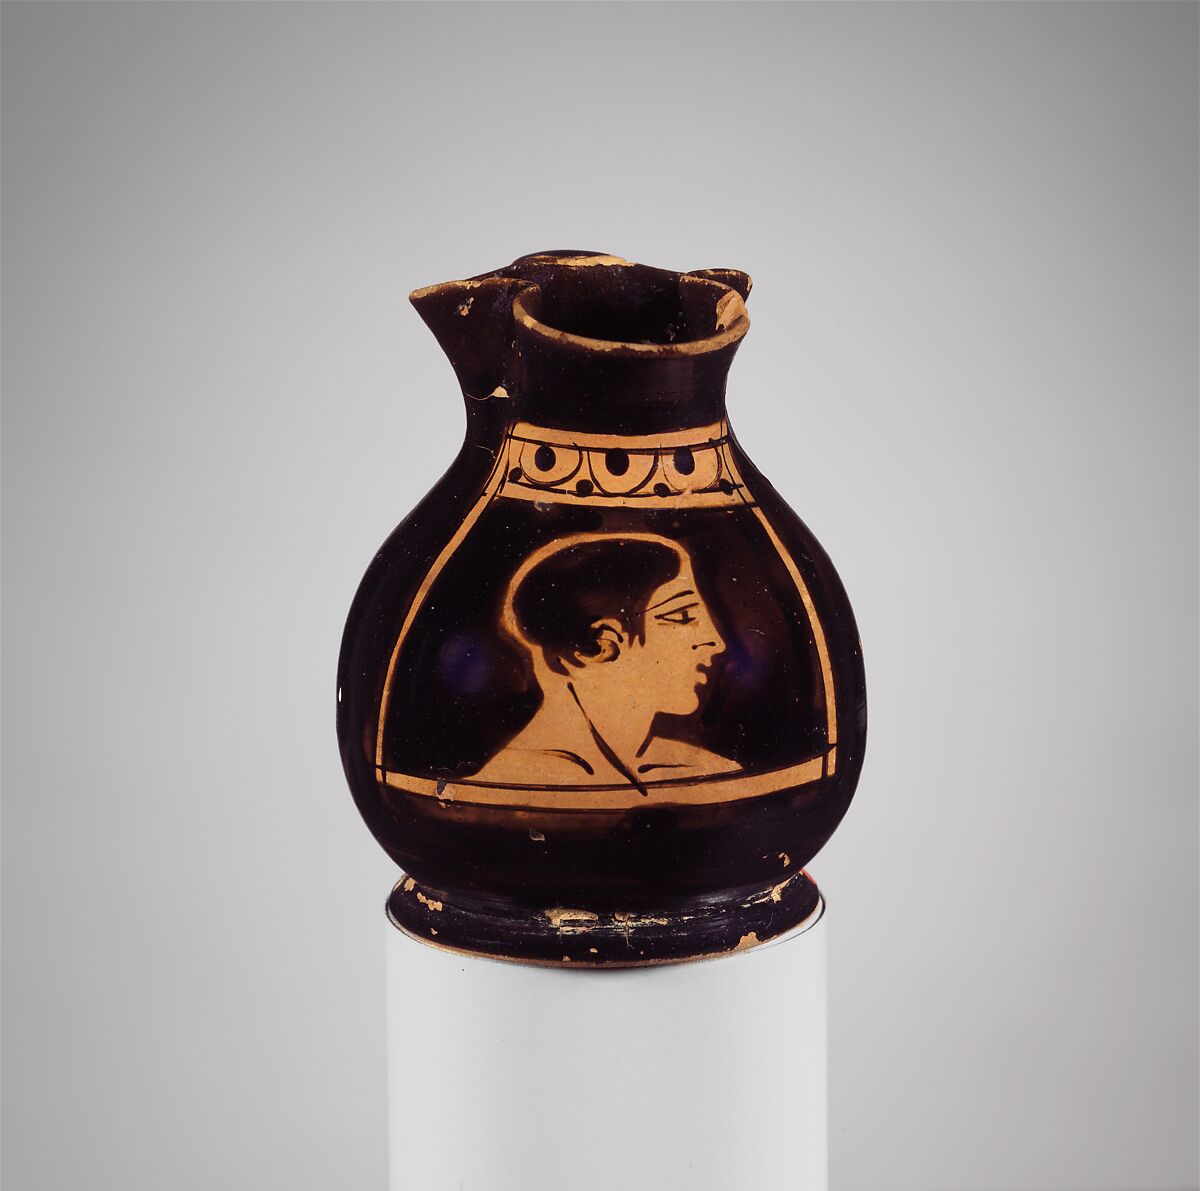 Terracotta oinochoe: chous (jug), Terracotta, Greek, Attic 